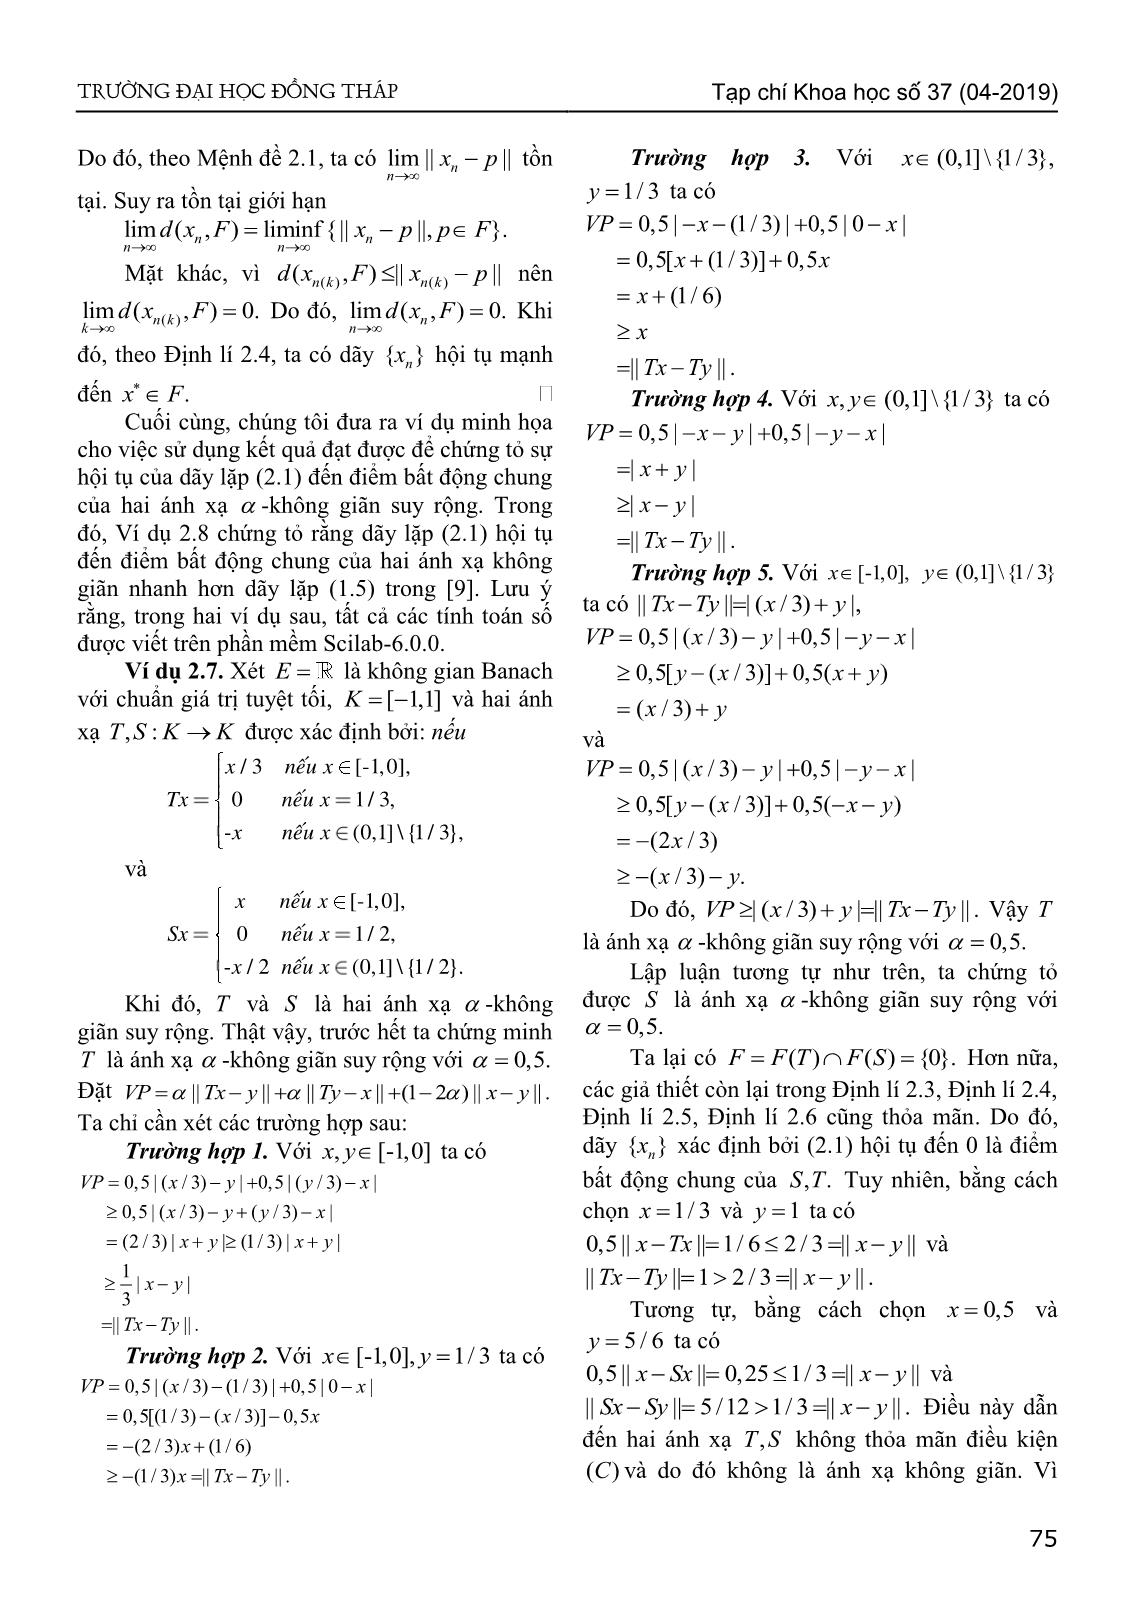 Sự hội tụ của dãy lặp kiểu Agarwal đến điểm bất động chung của hai ánh xạ - Không giãn suy rộng trong không gian Banach lồi đều trang 6